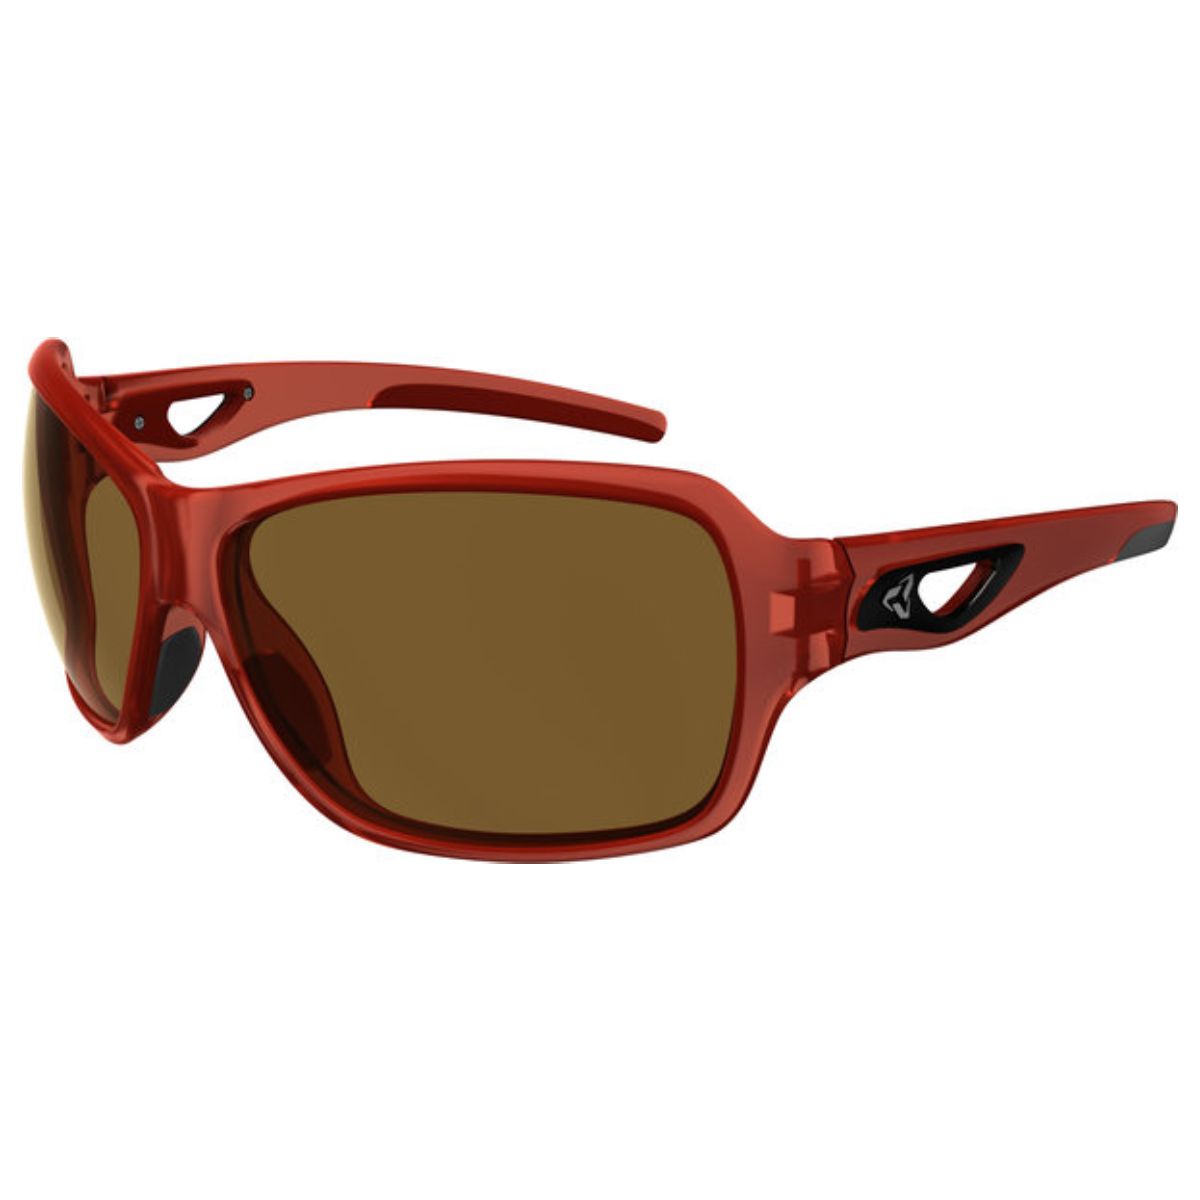 1 x Ryders Carlita Sunglasses Red - Brown Lenses